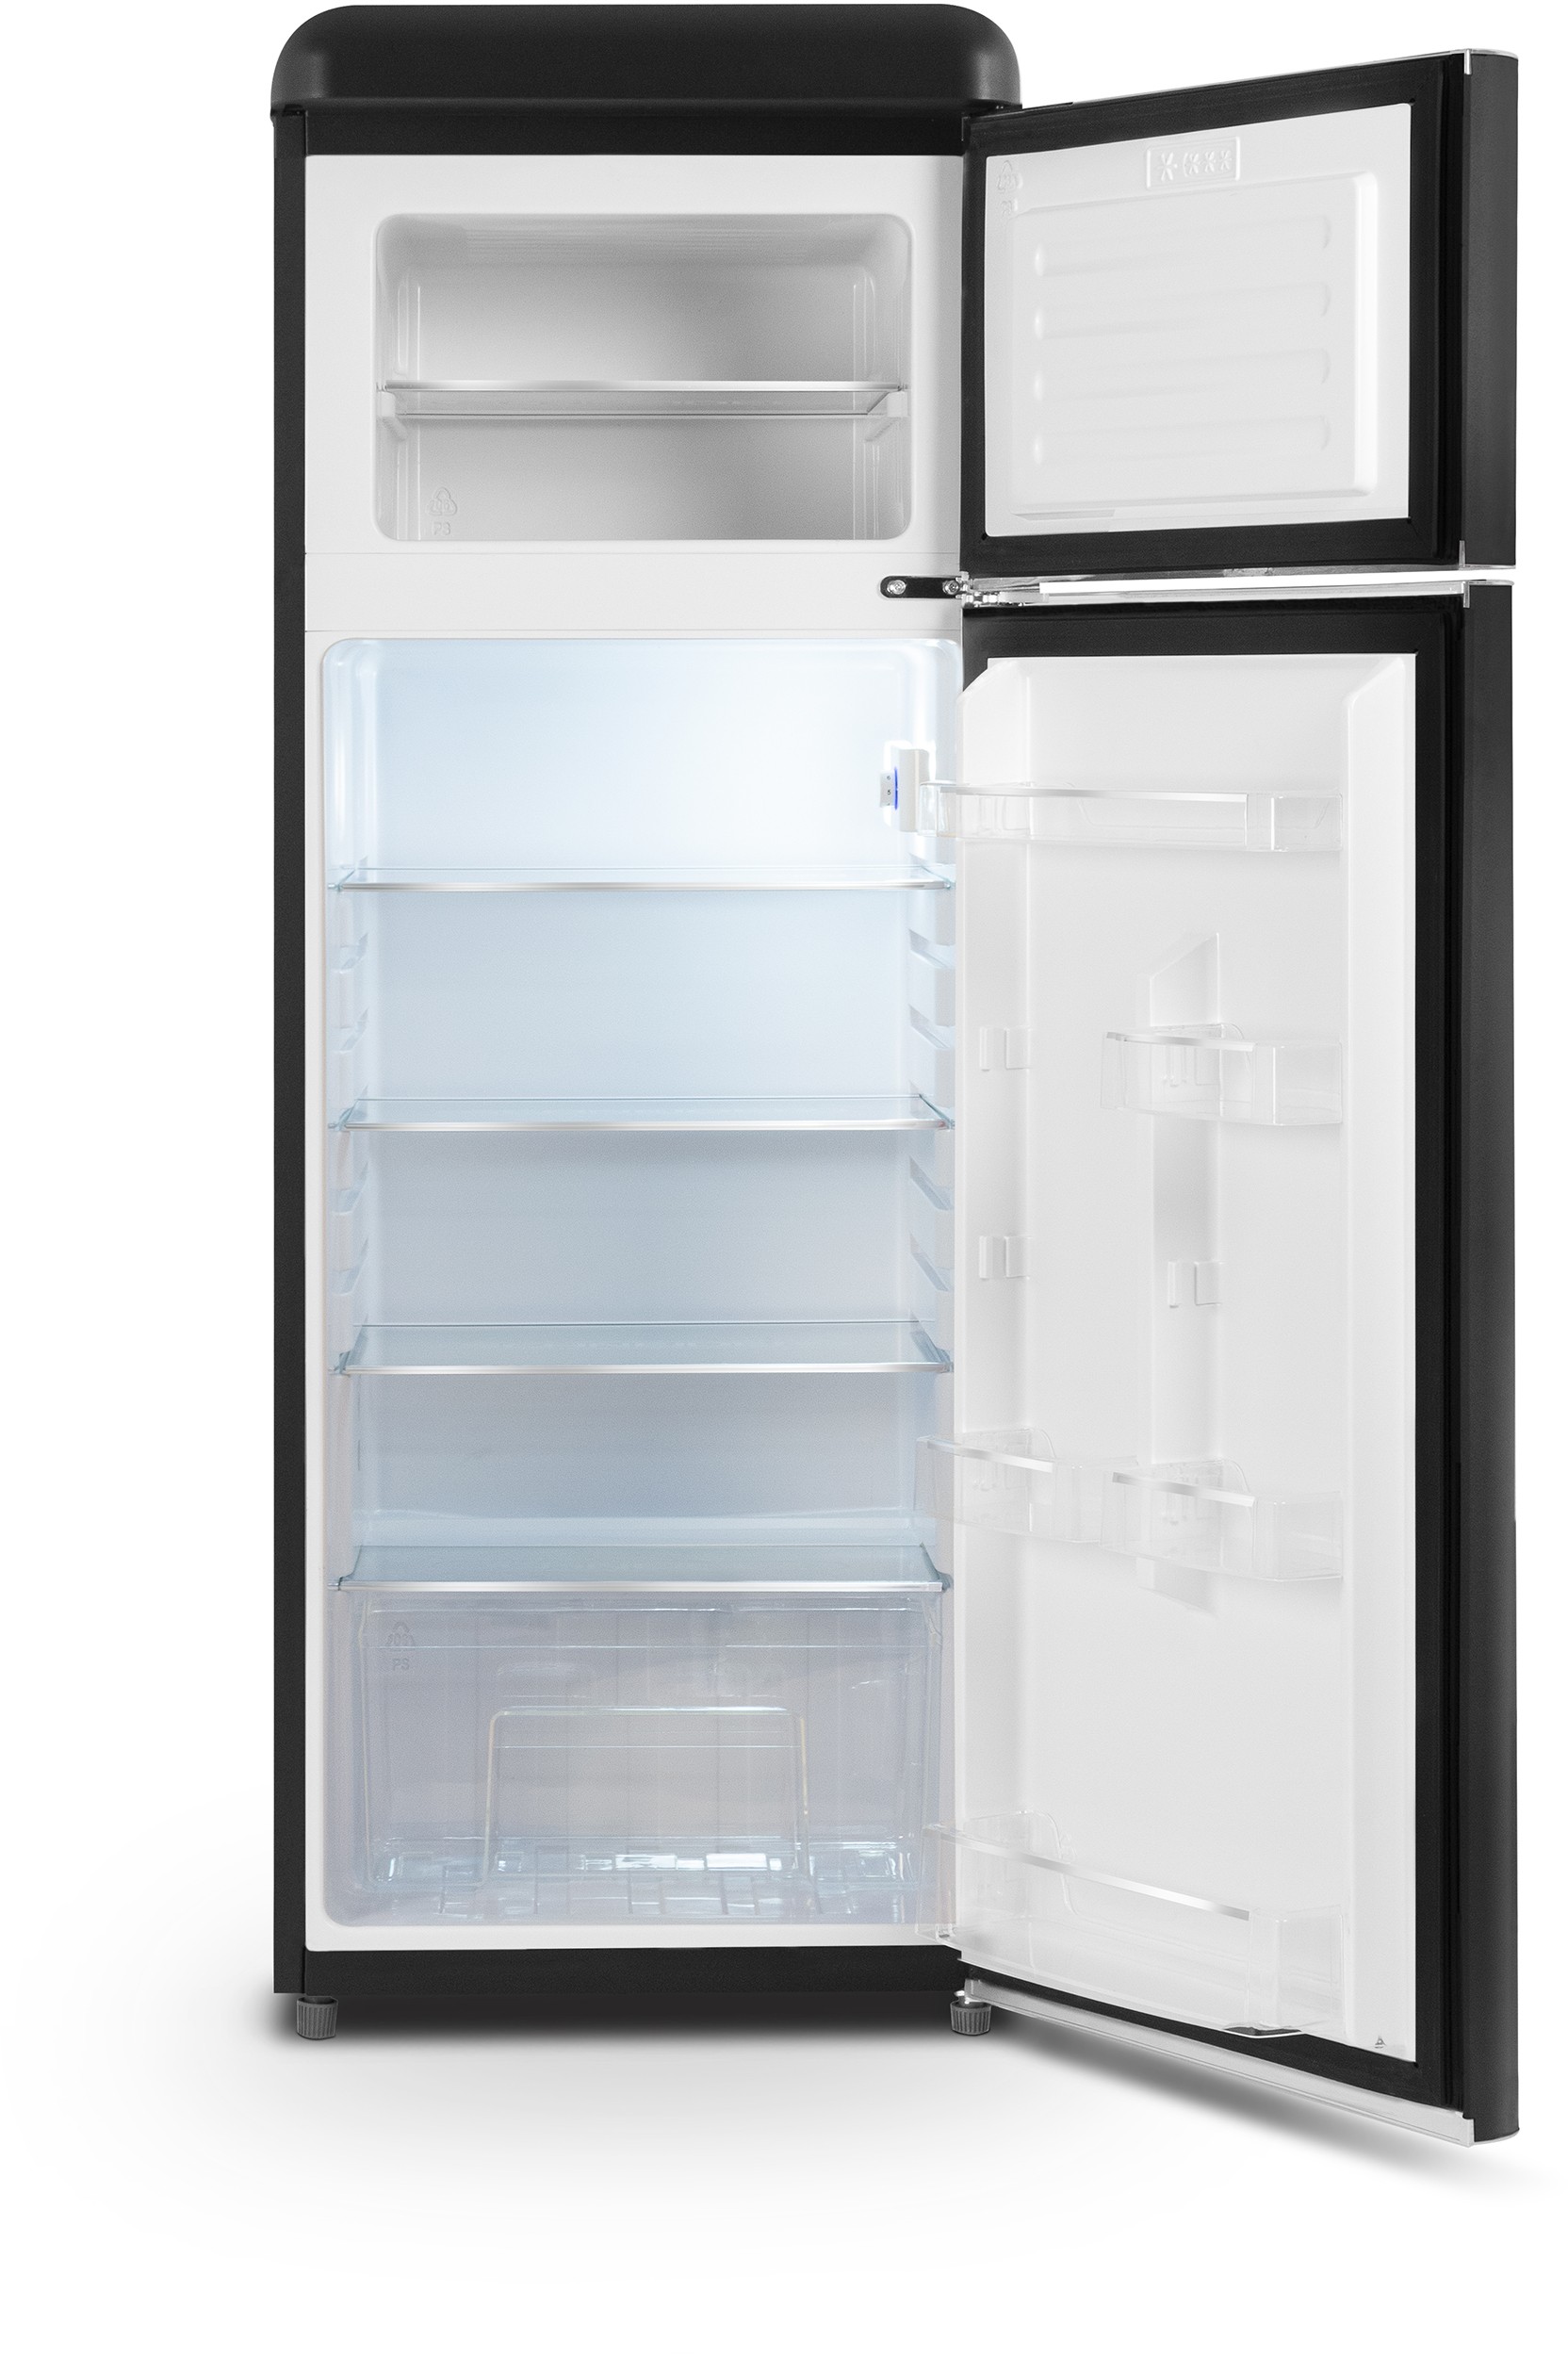 SCHNEIDER Réfrigérateur congélateur haut Vintage combiné  206 L Noir mat - SCDD208VB